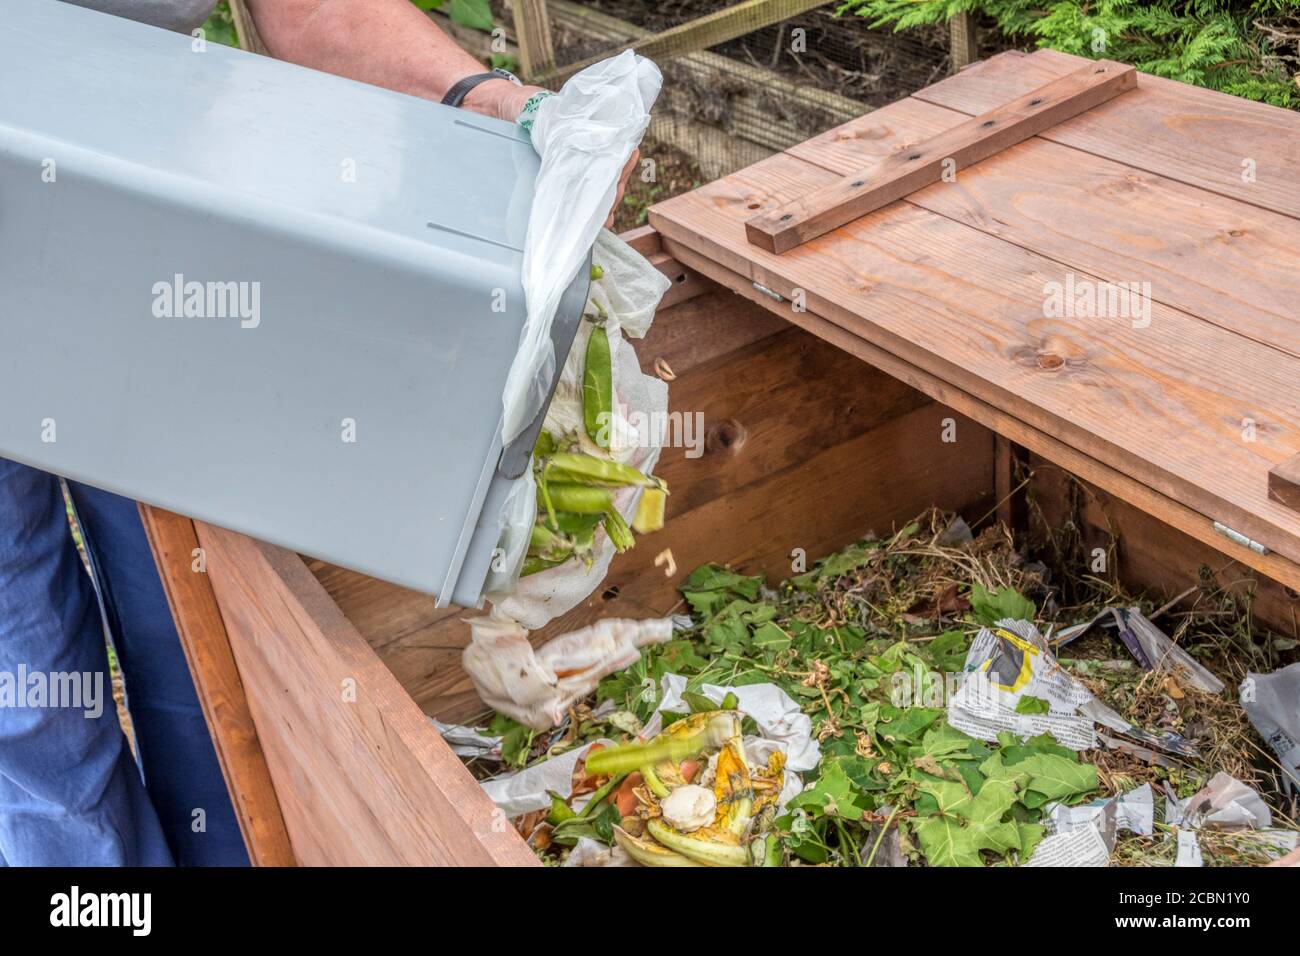 Frau kippt grünen organischen Hausmüll auf einen Komposthaufen. Stockfoto